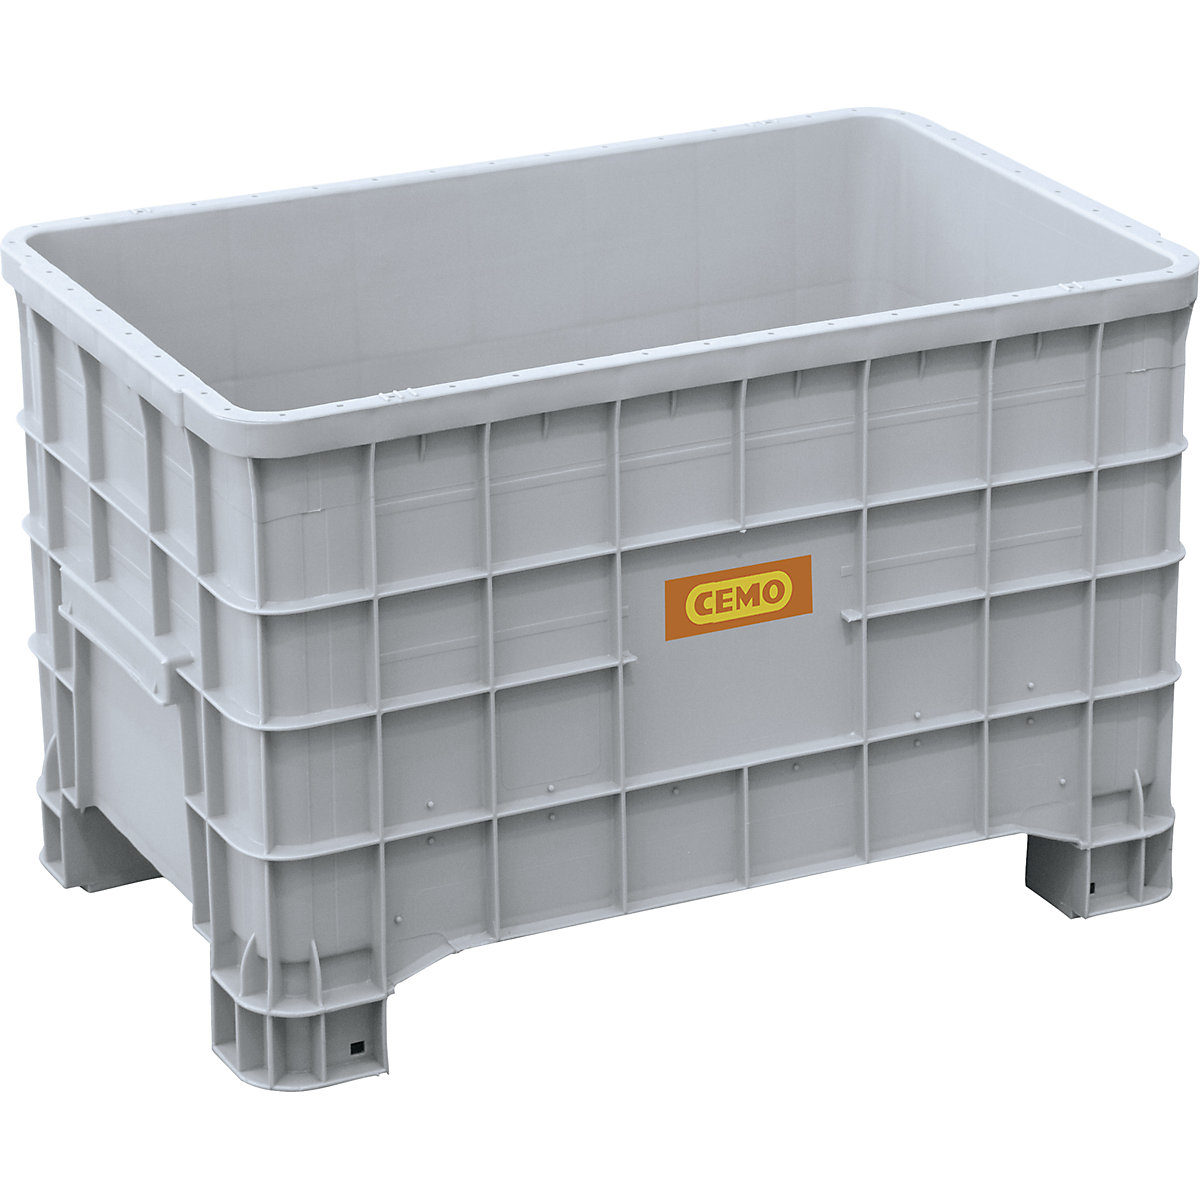 Caixa de armazenamento e transporte para baterias usadas - CEMO